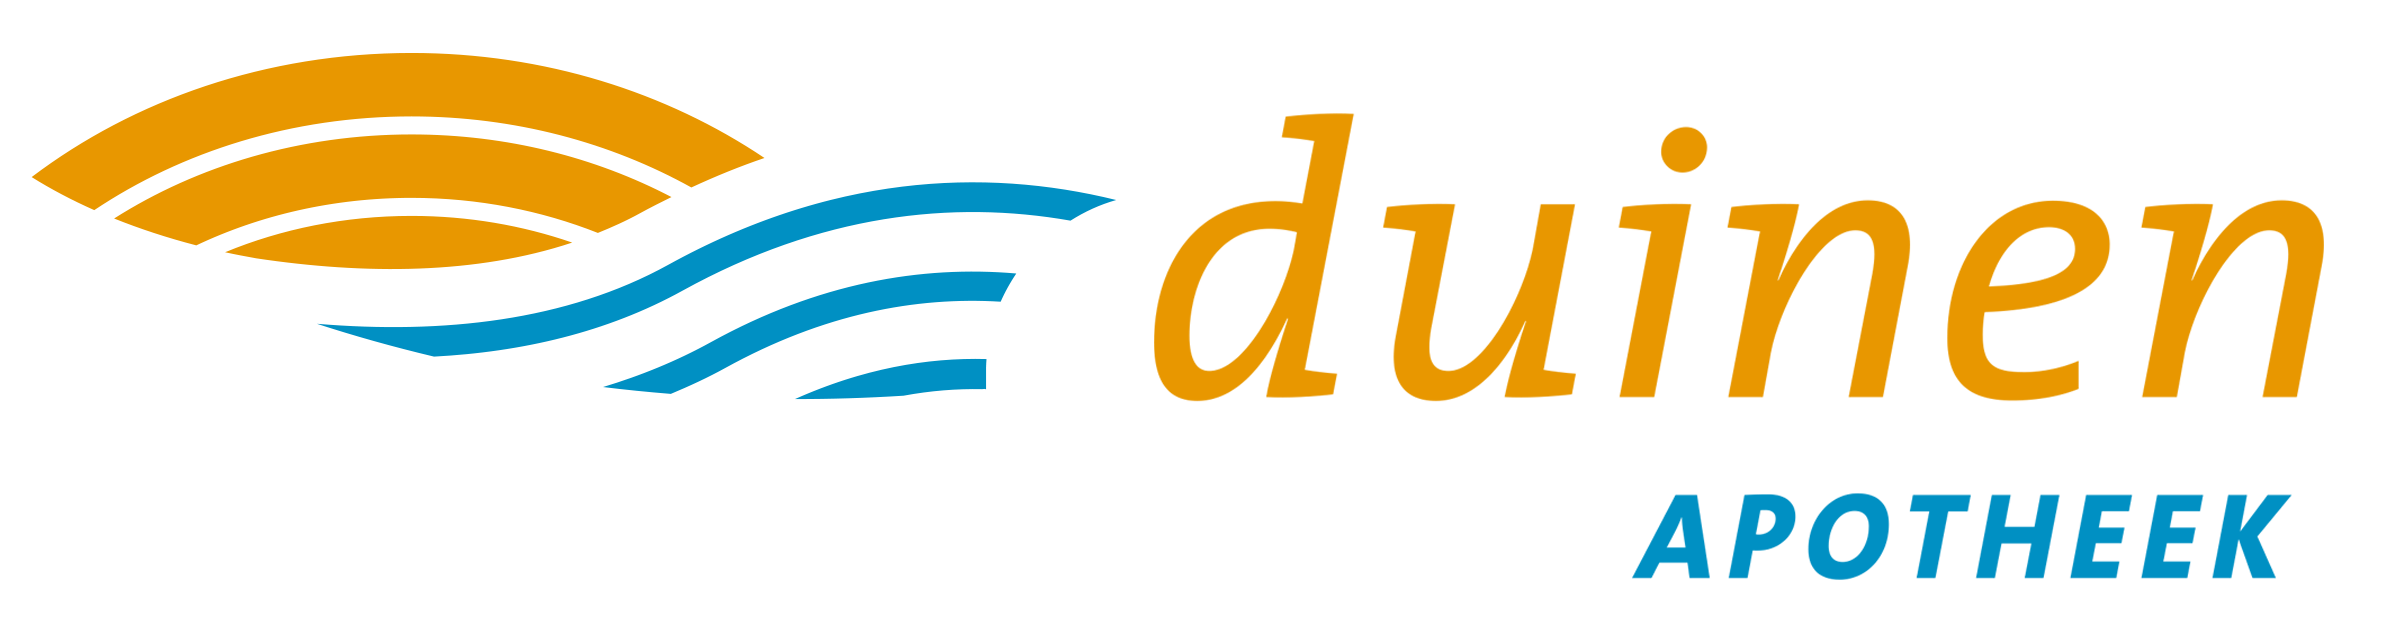 apotheekduinen logo